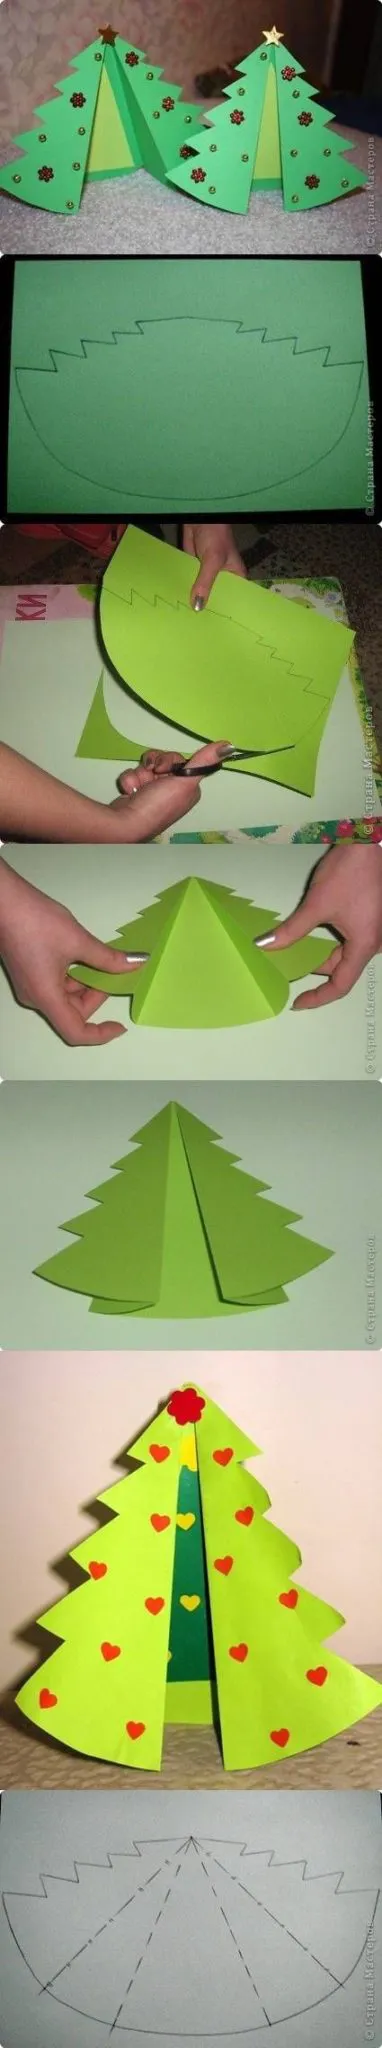 arboles de navidad infantiles con papel